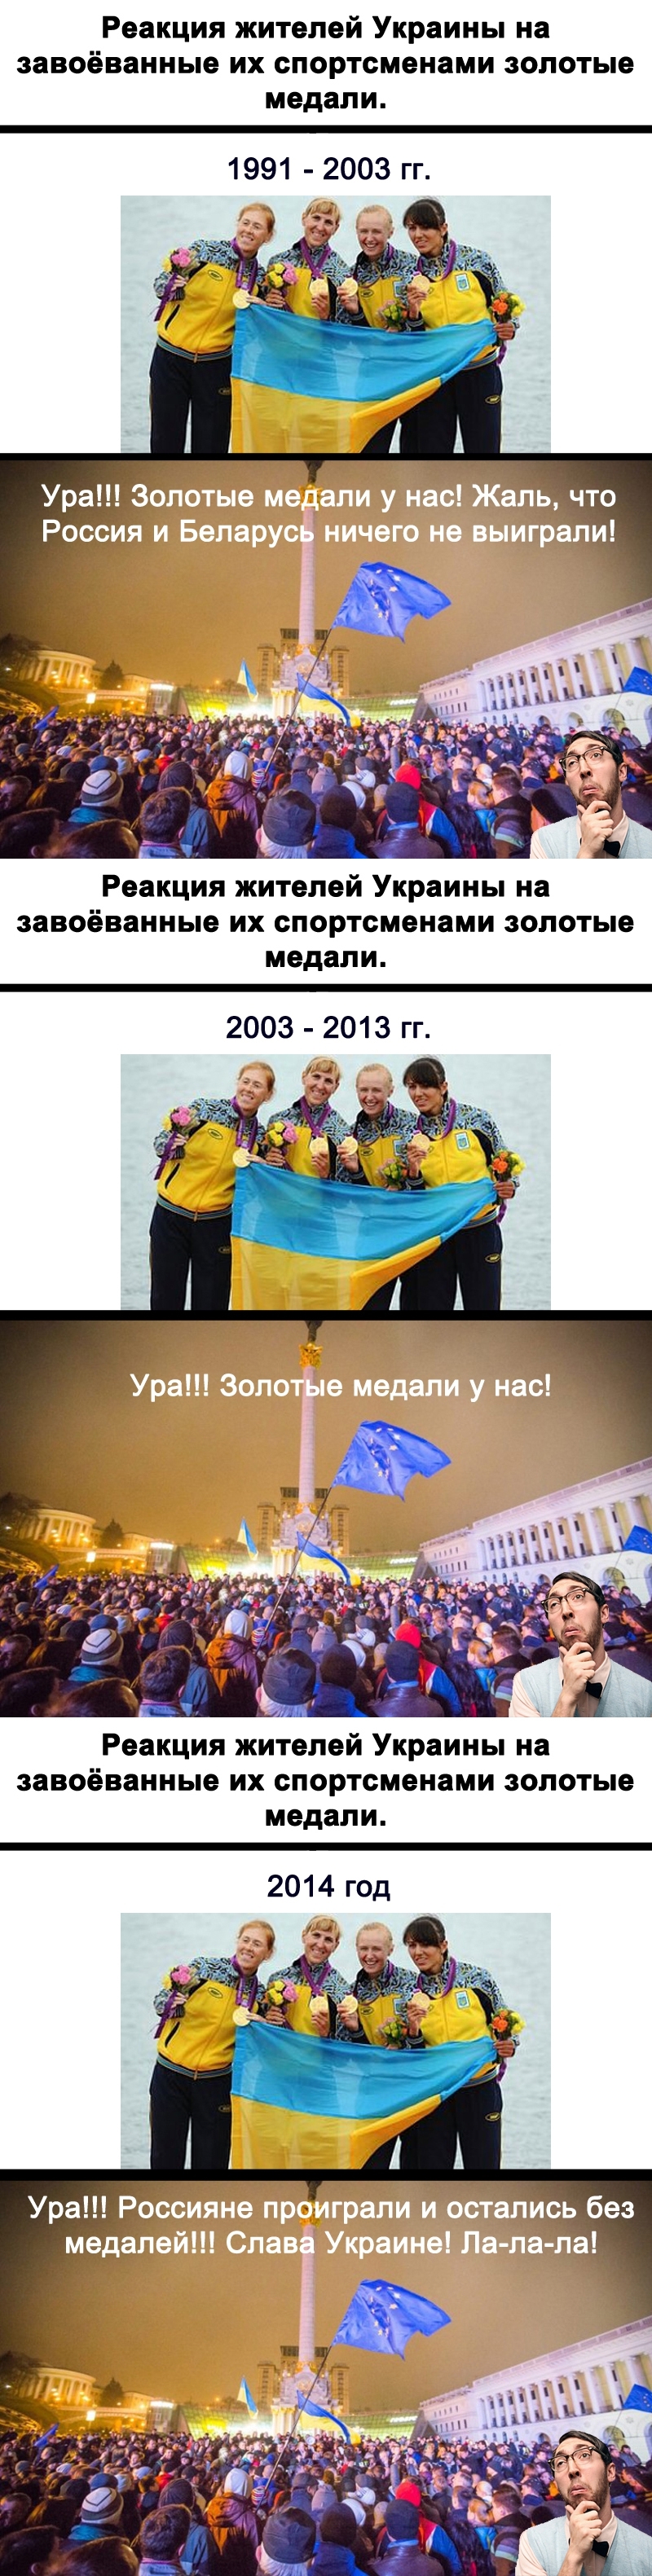 Как радовались и радуются простые украинцы успехам своих спортсменов